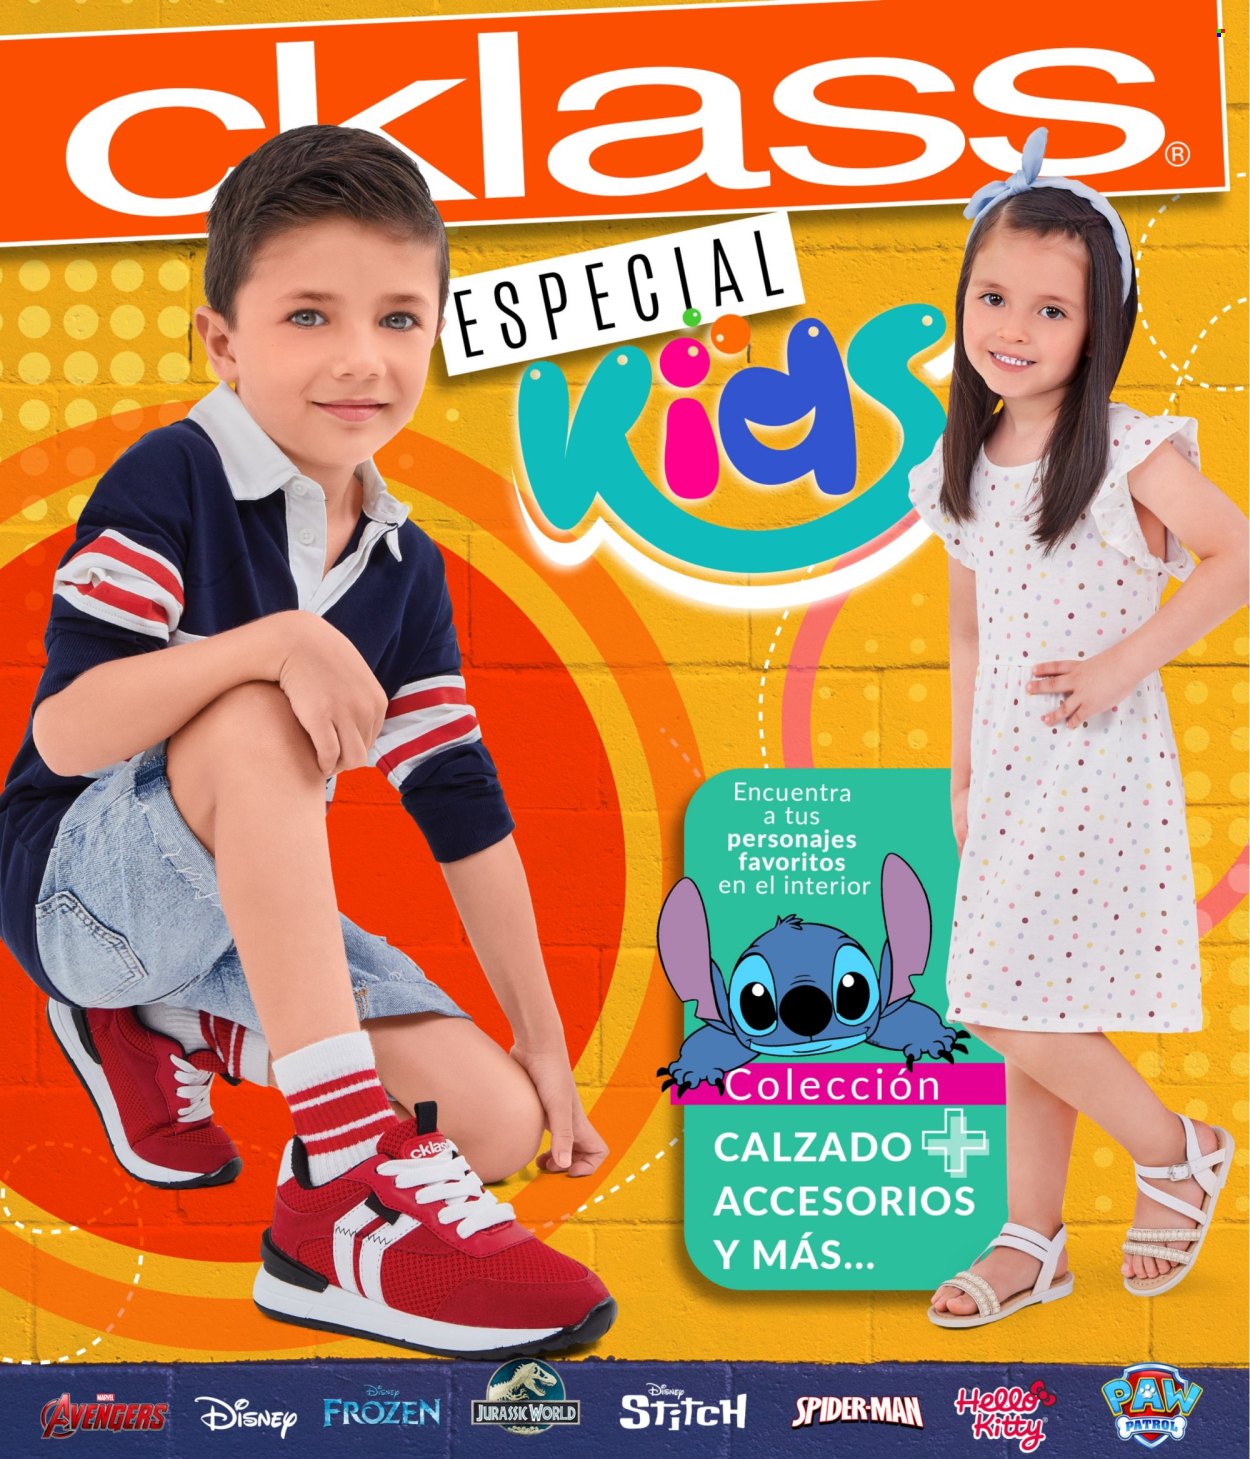 Catálogo Cklass.